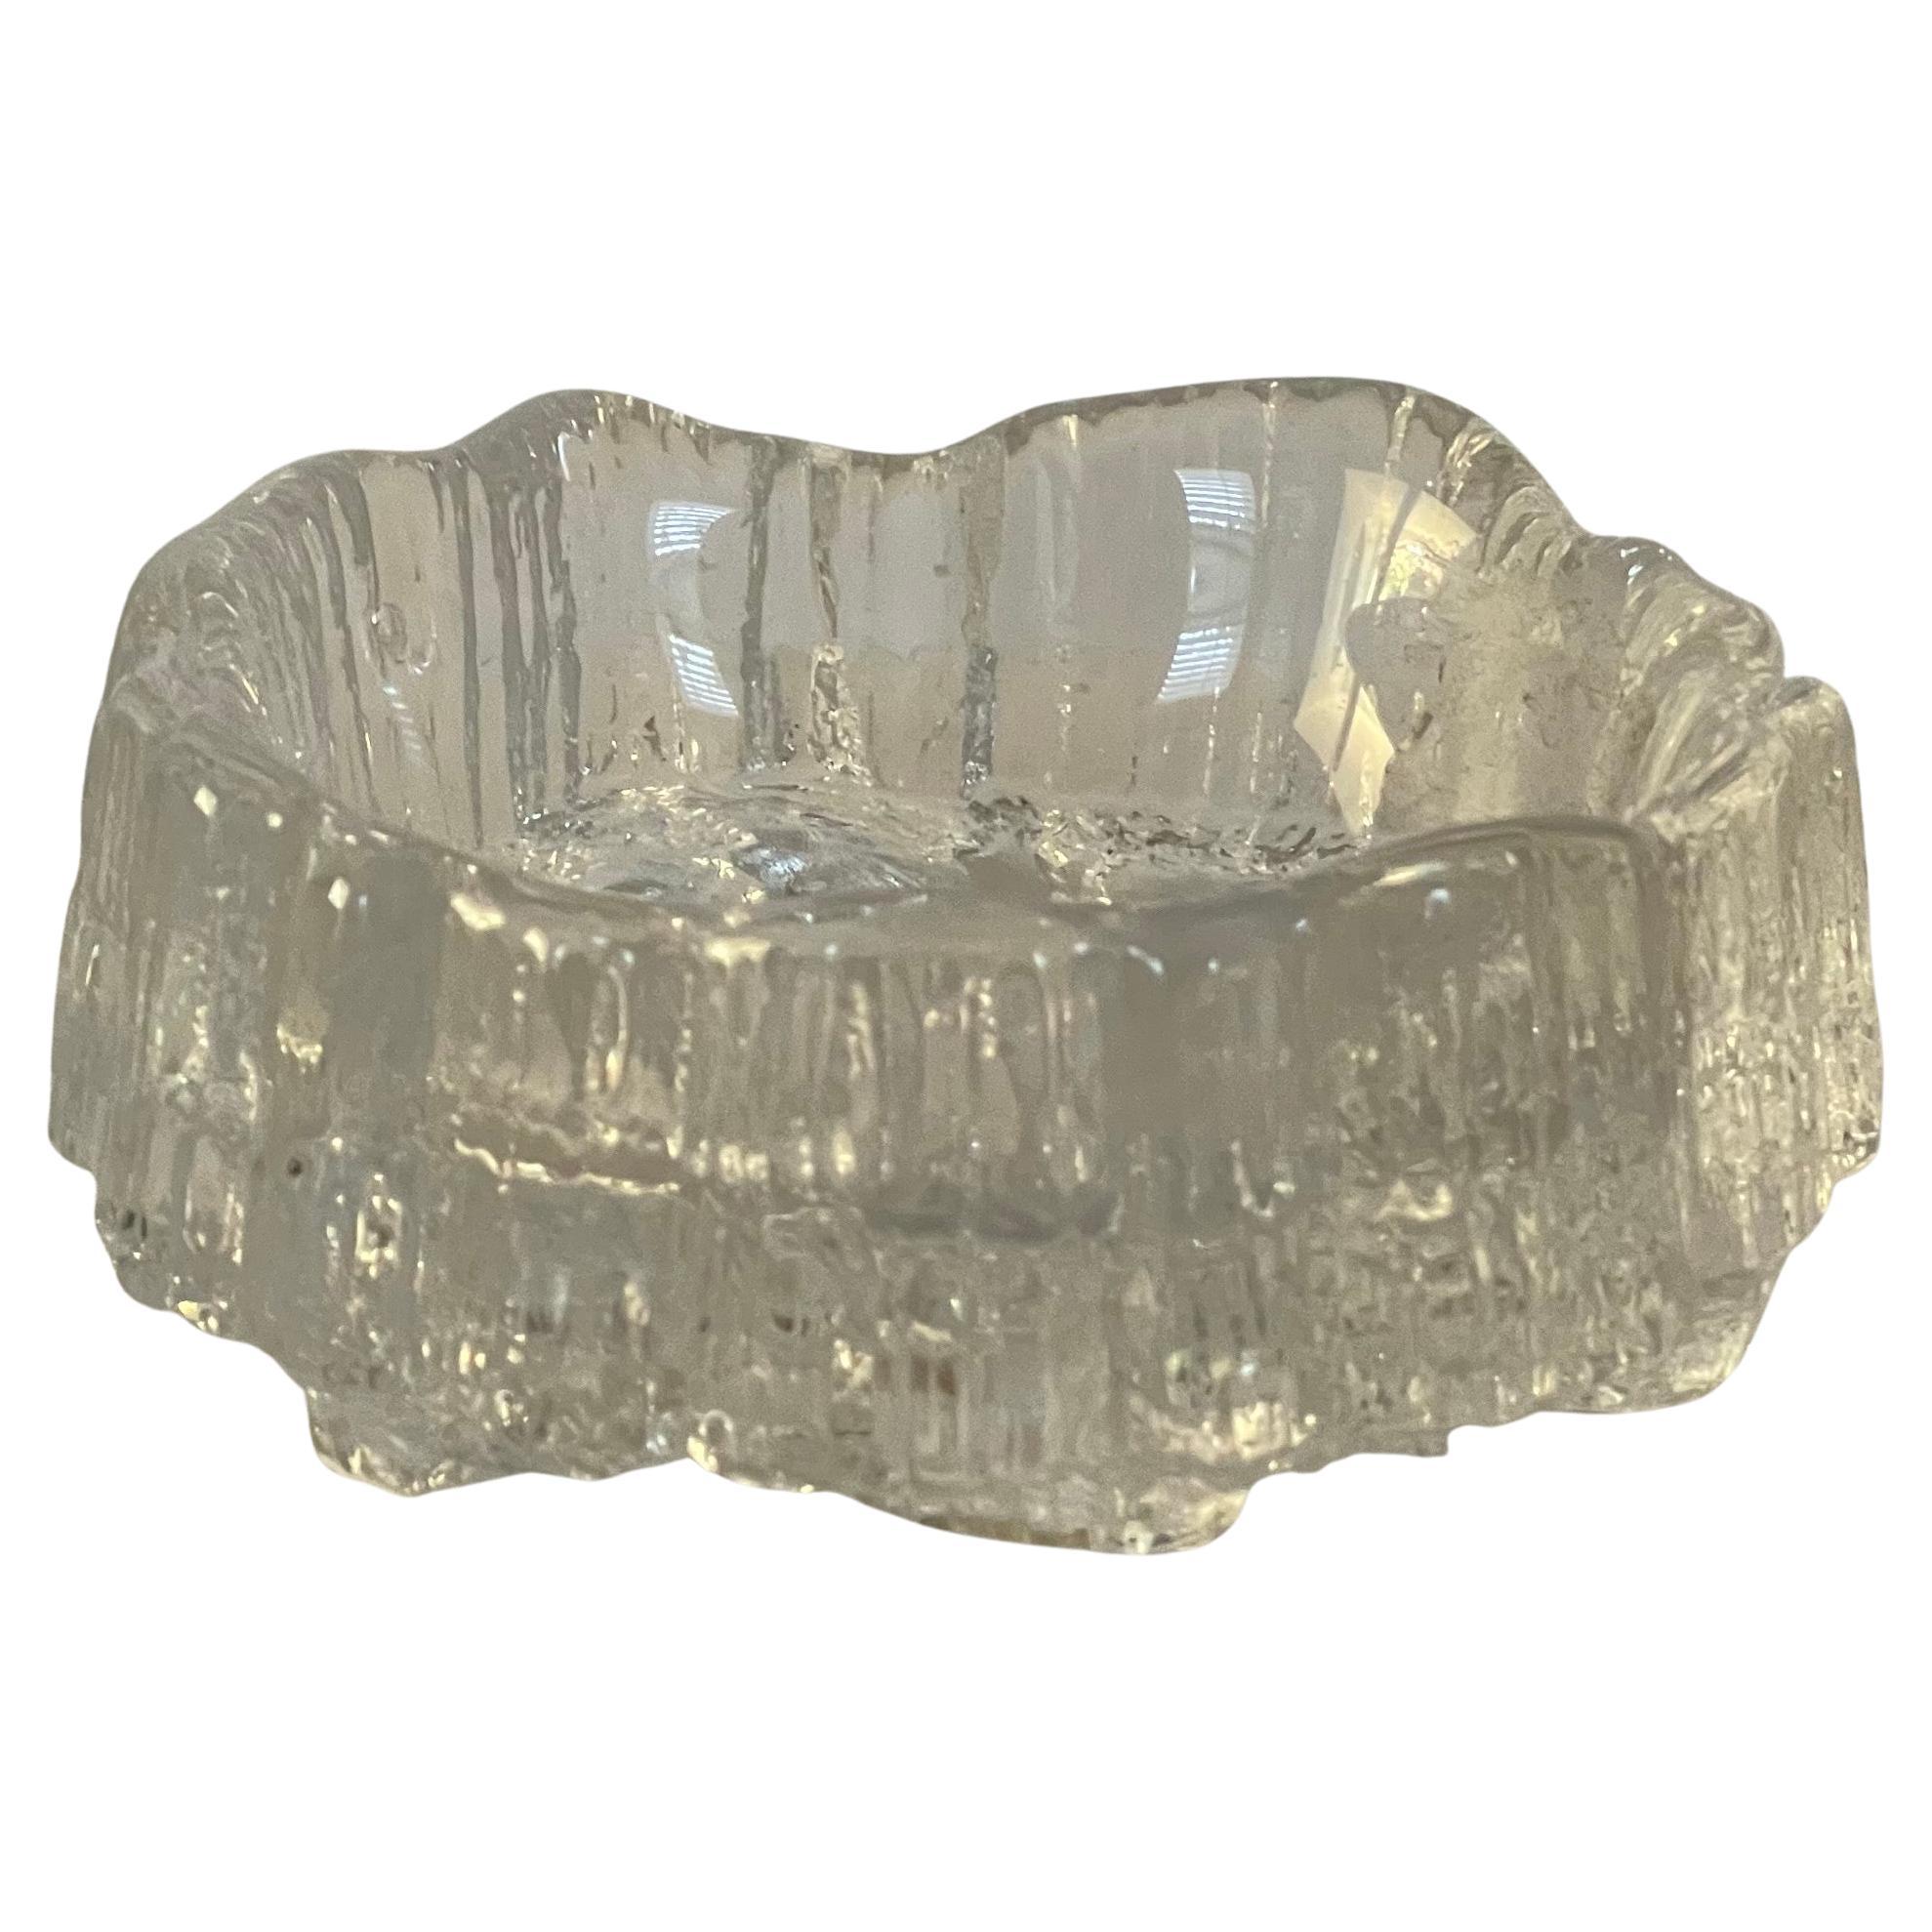 Wunderschöner Eisberg-Aschenbecher aus Kristall von Tapio Wirkkala für Iittala Finnland, ca. 1980er Jahre. Das Stück ist in sehr gutem Vintage-Zustand ohne Chips oder Risse und misst eine 5 